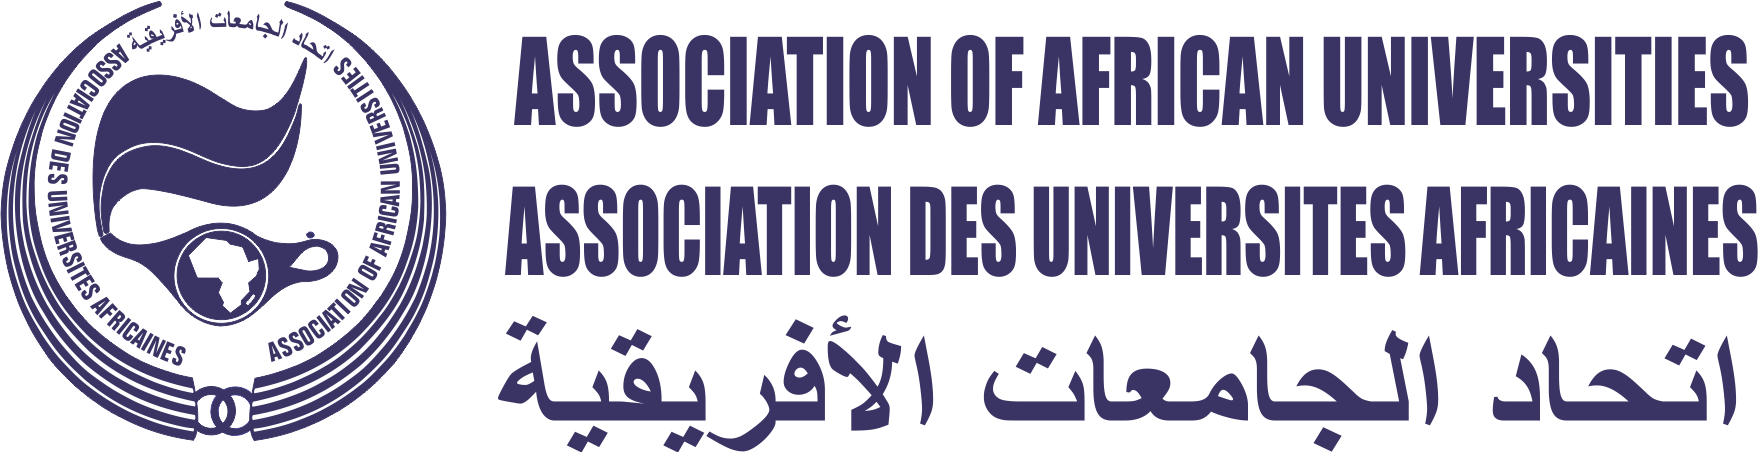 Key HAQAA2 Meetings hosted in Abidjan Cote d’Ivoire (6-10 June 2022)